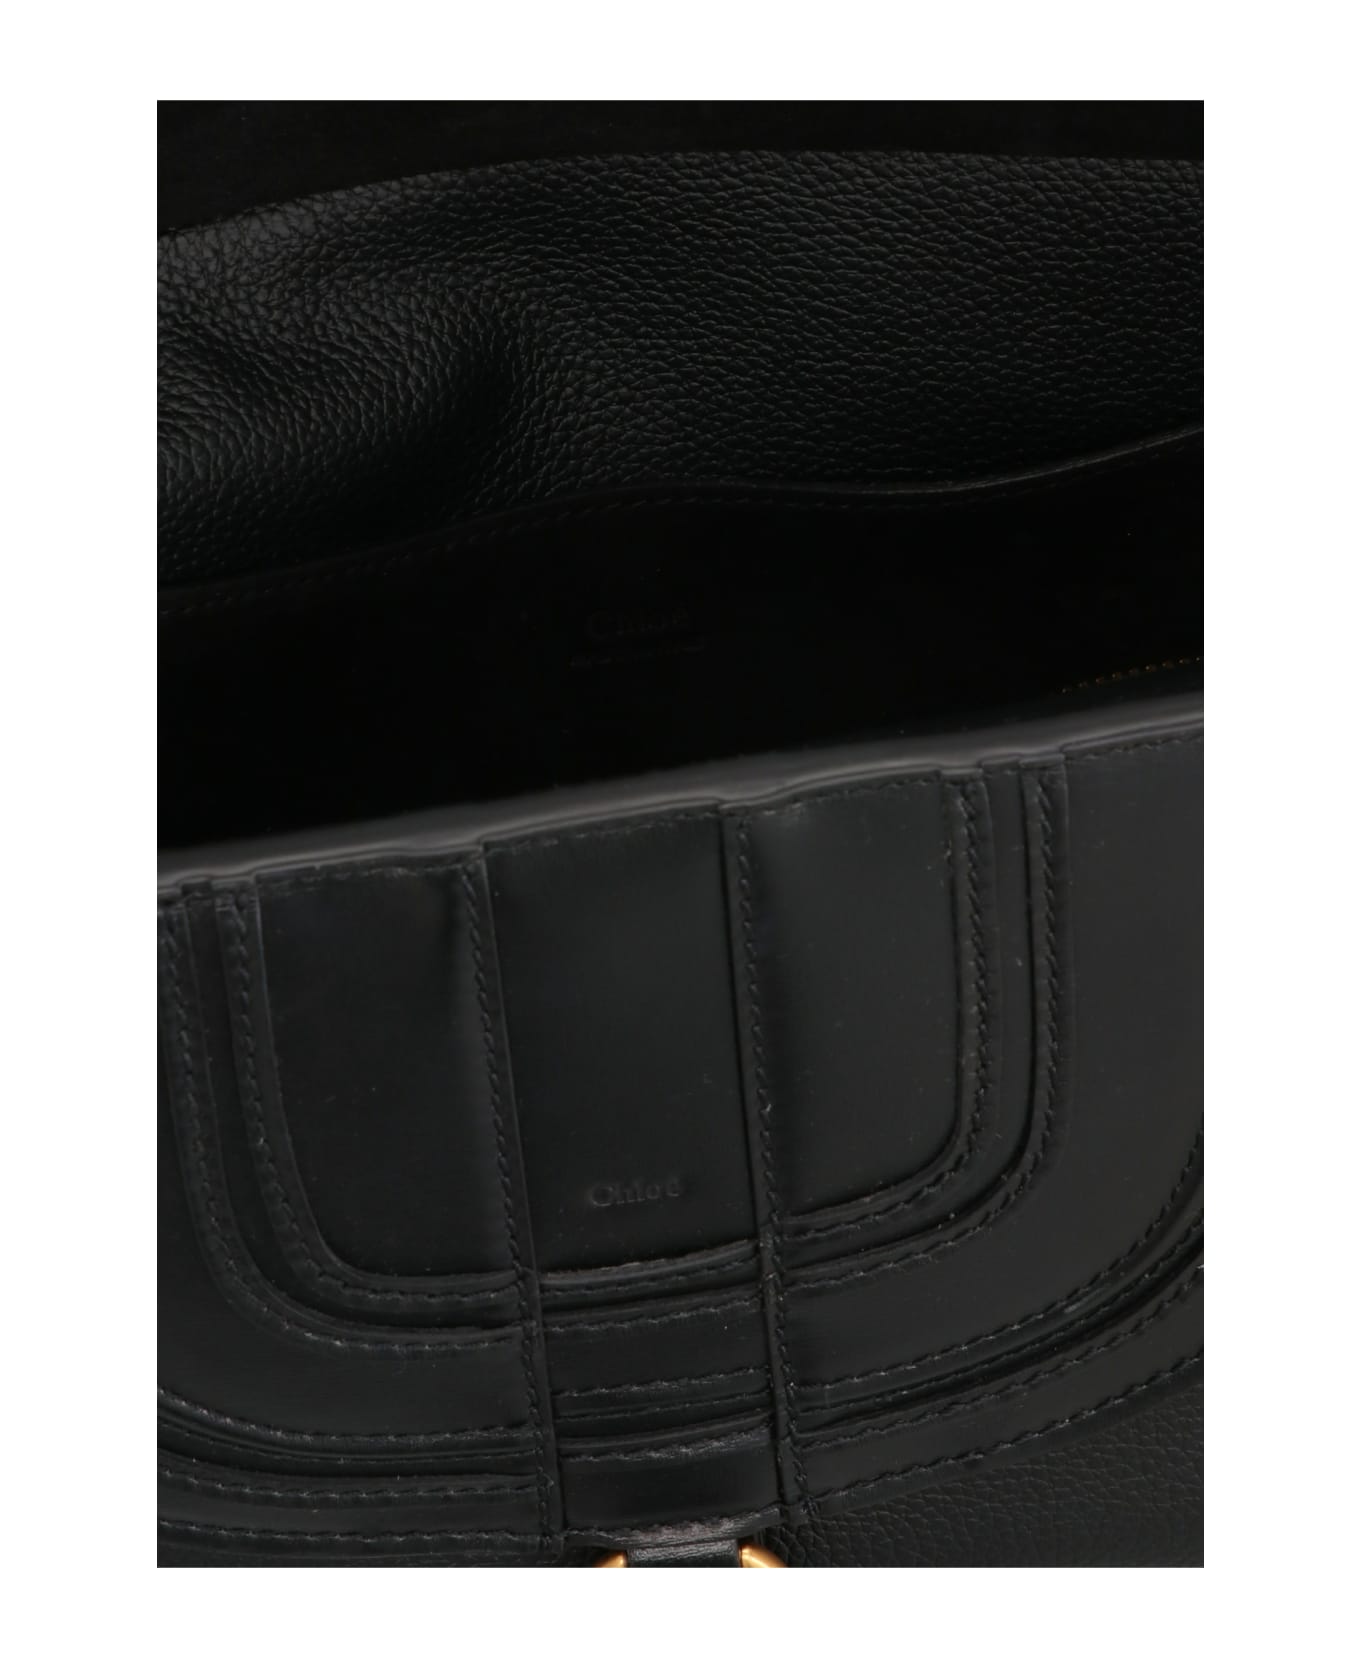 Chloé 'marcie' Shoulder Bag - Black トートバッグ